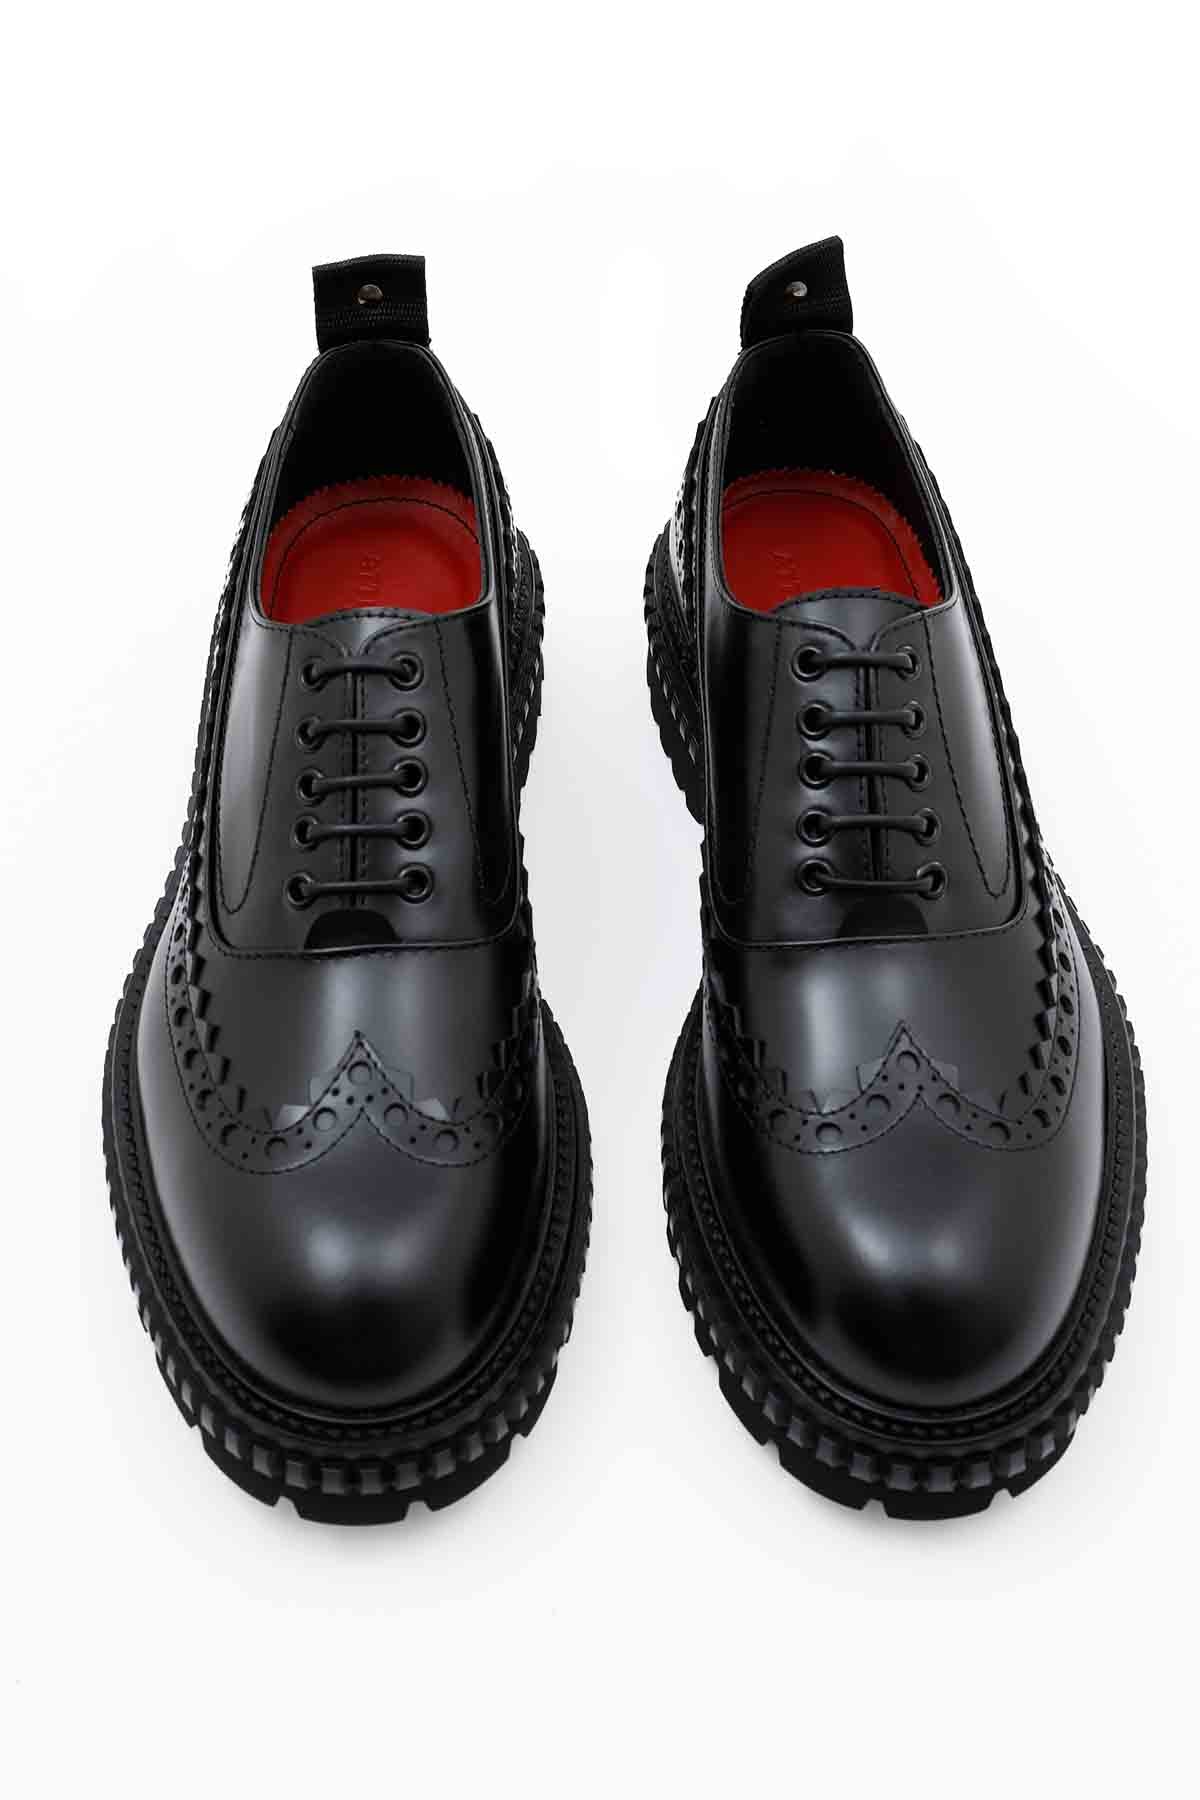 Attimonelli's Zımbalı Deri Ayakkabı-Libas Trendy Fashion Store